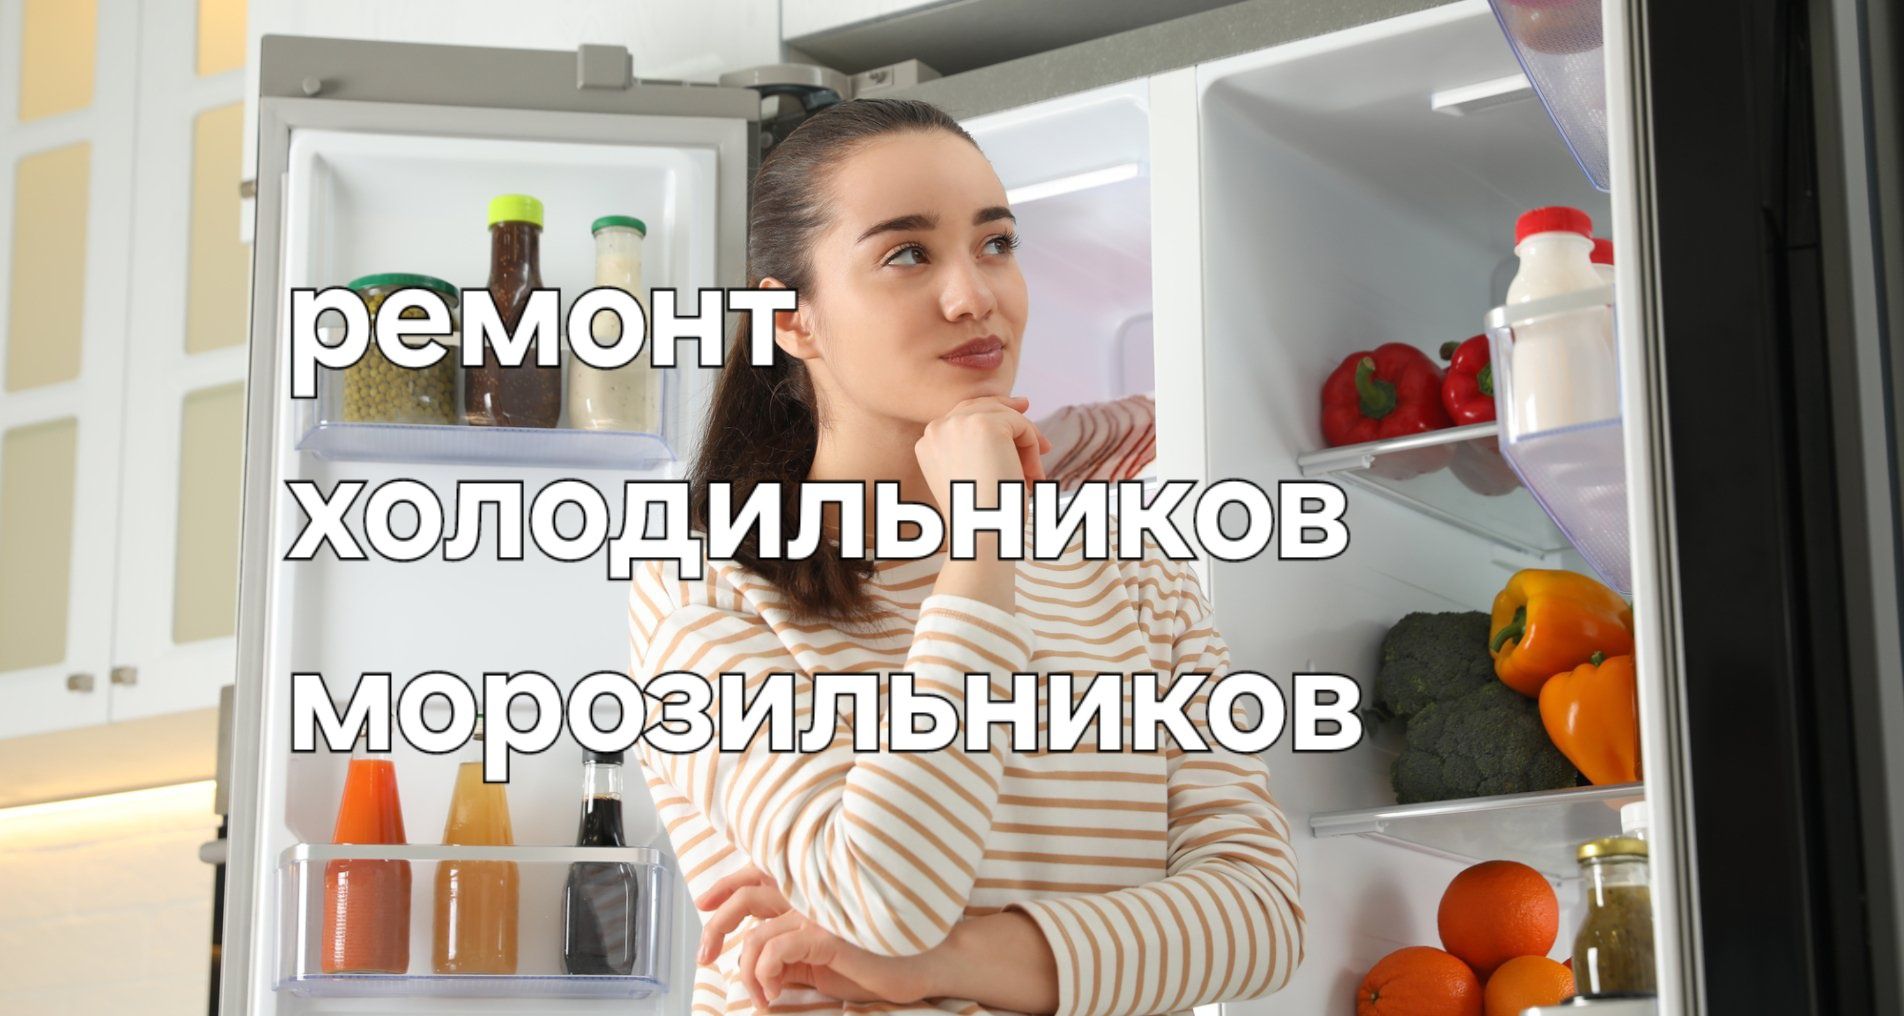 Заправка холодильника,морозильника. Ремонт холодильника,морозильника